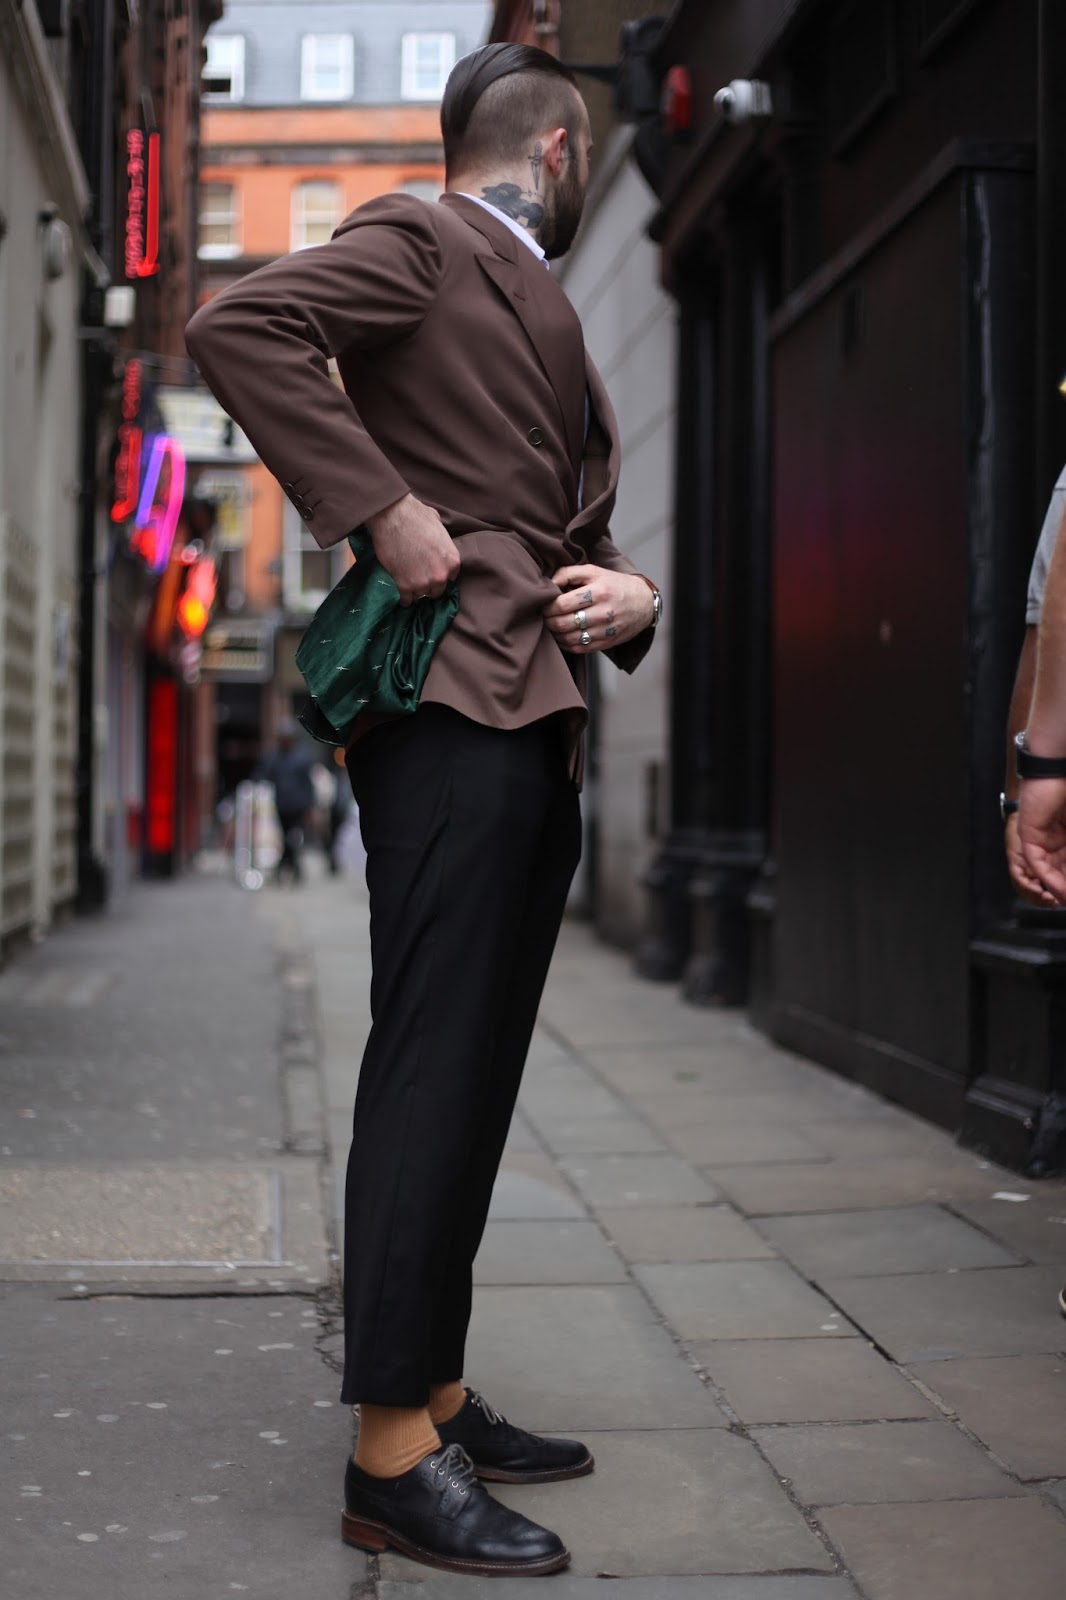 London Fashion by Paul: July 2012